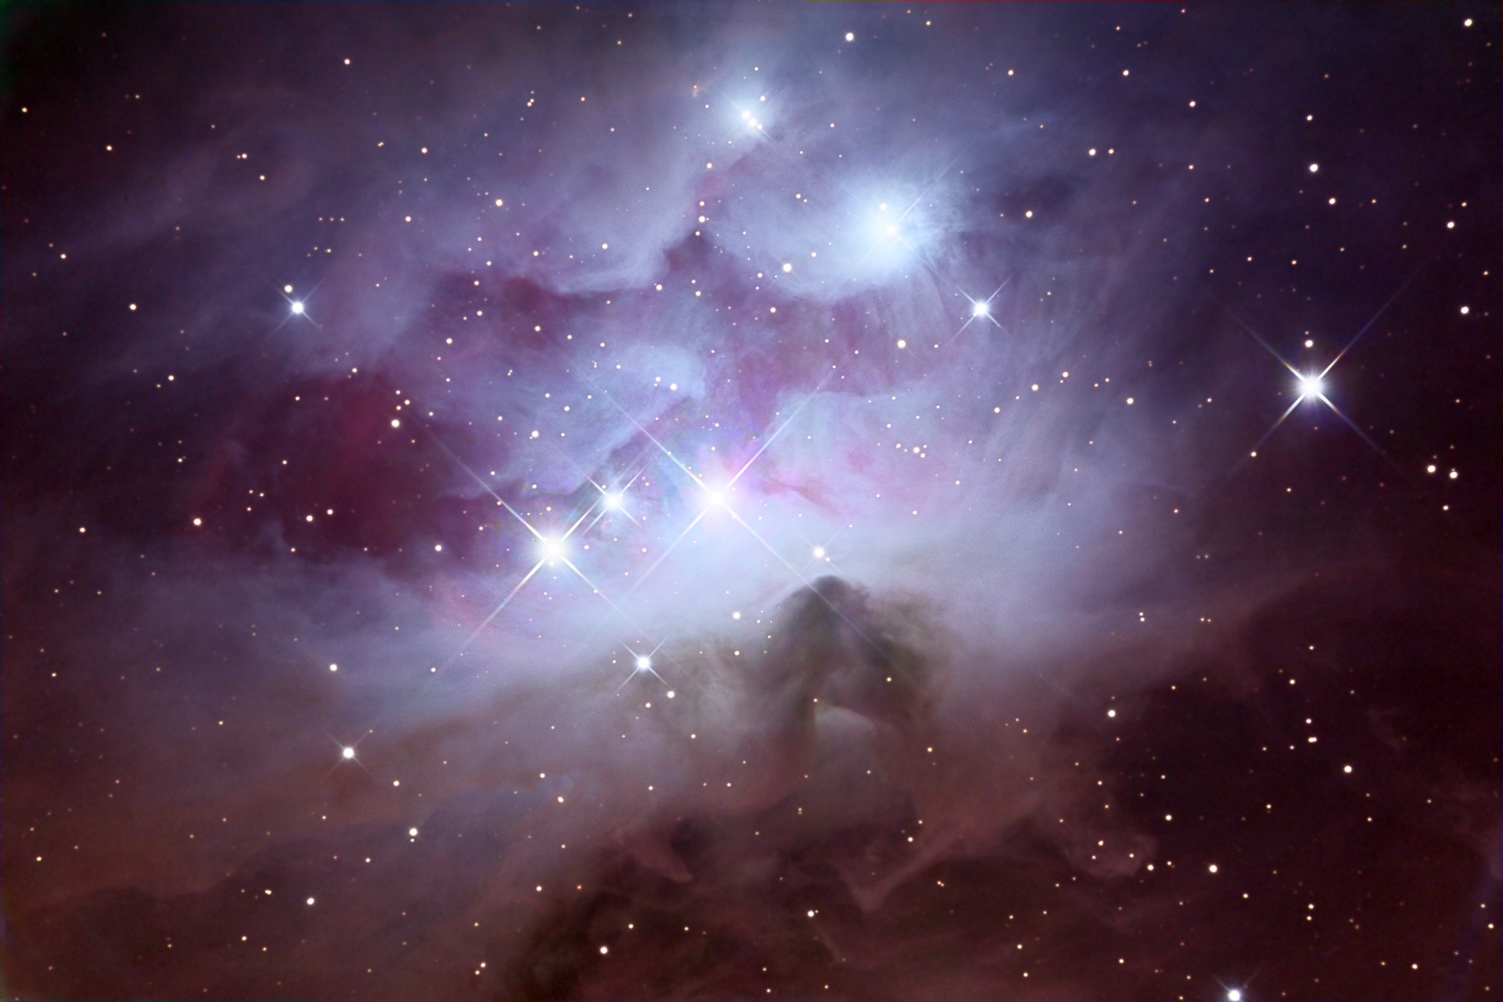 NGC 1977